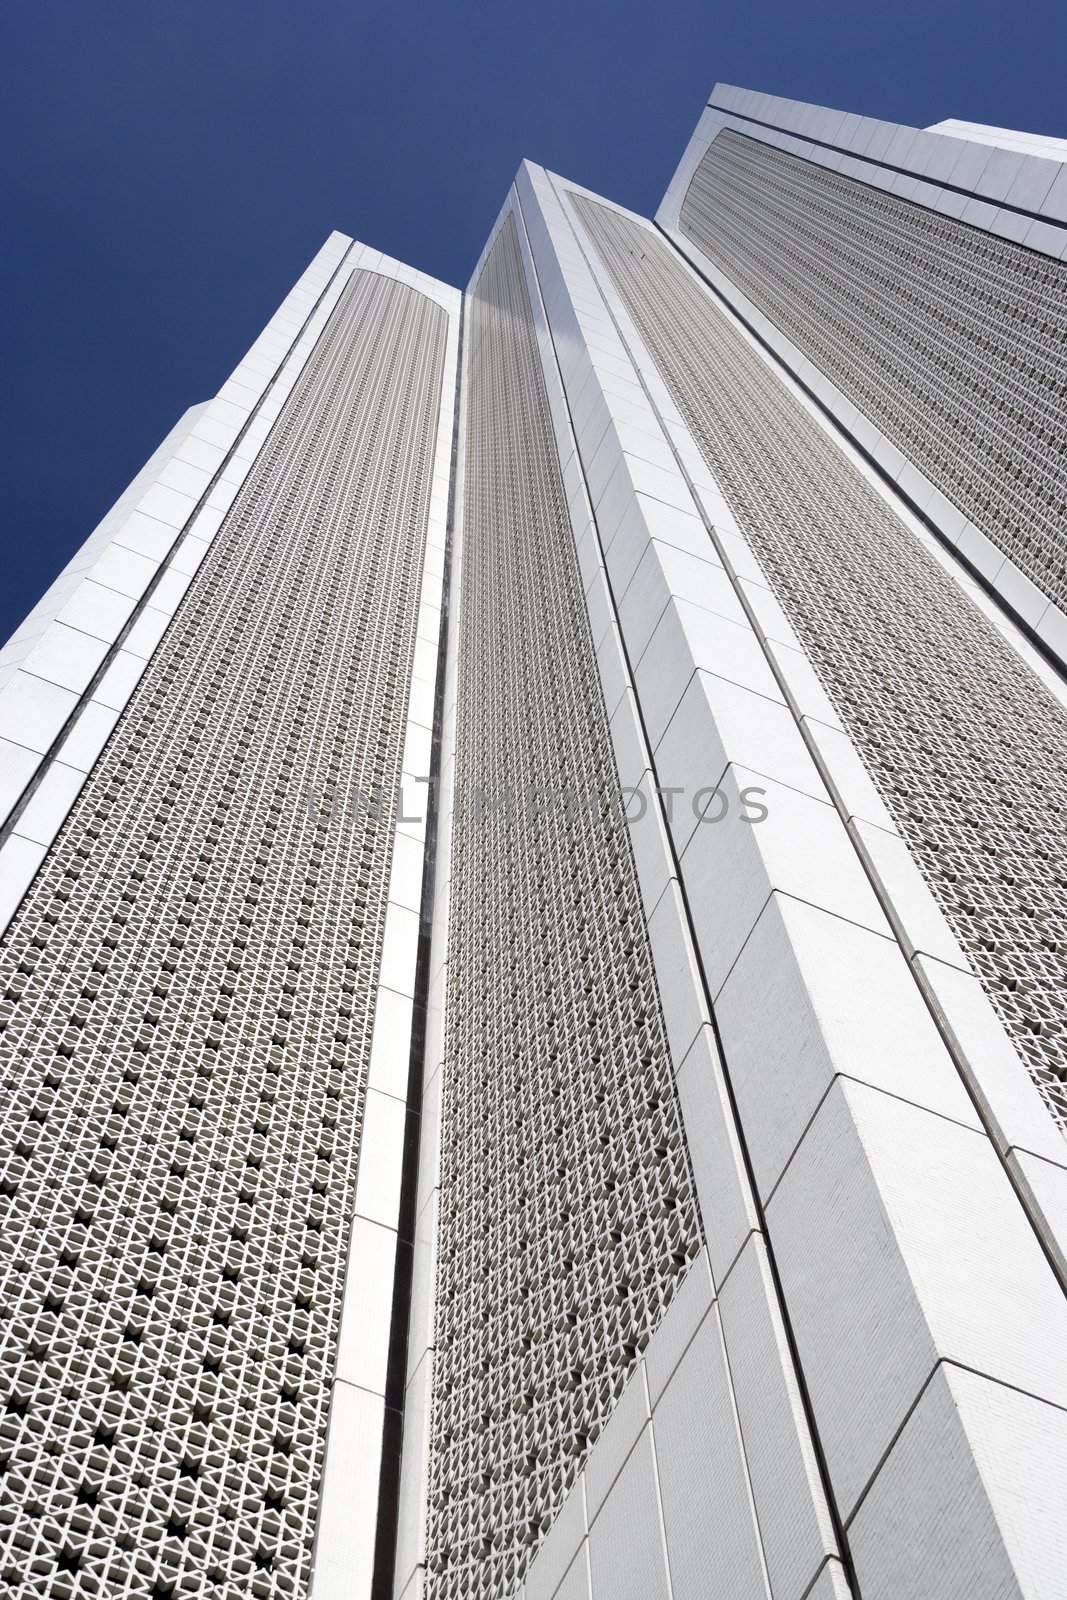 Image of a modern corporate building in Kuala Lumpur, Malaysia.